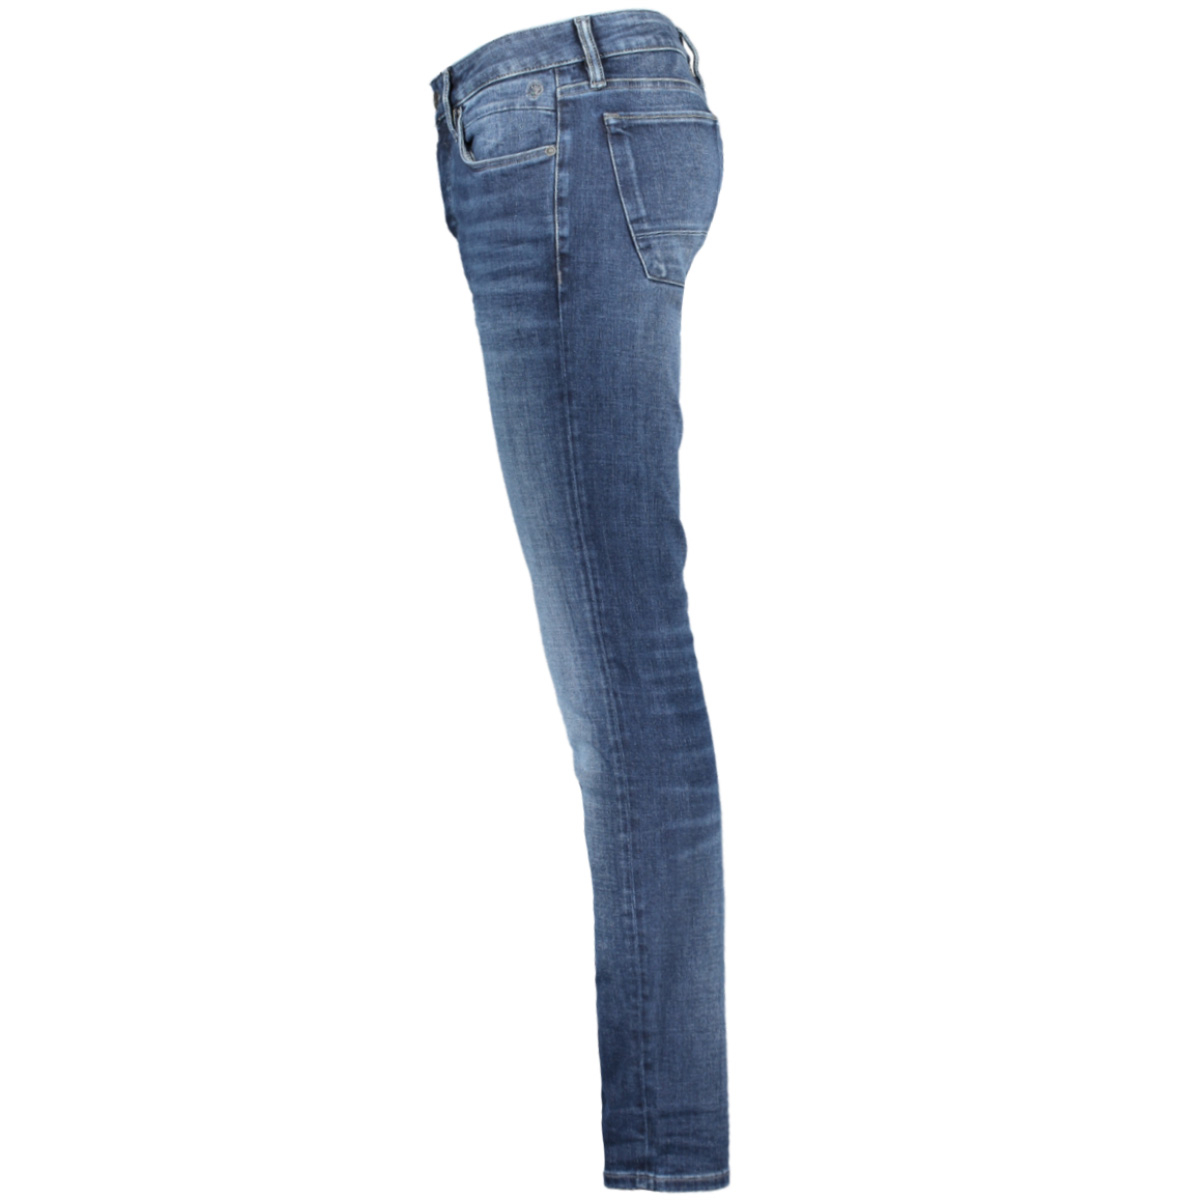 cast iron riser slim fit jeans sale